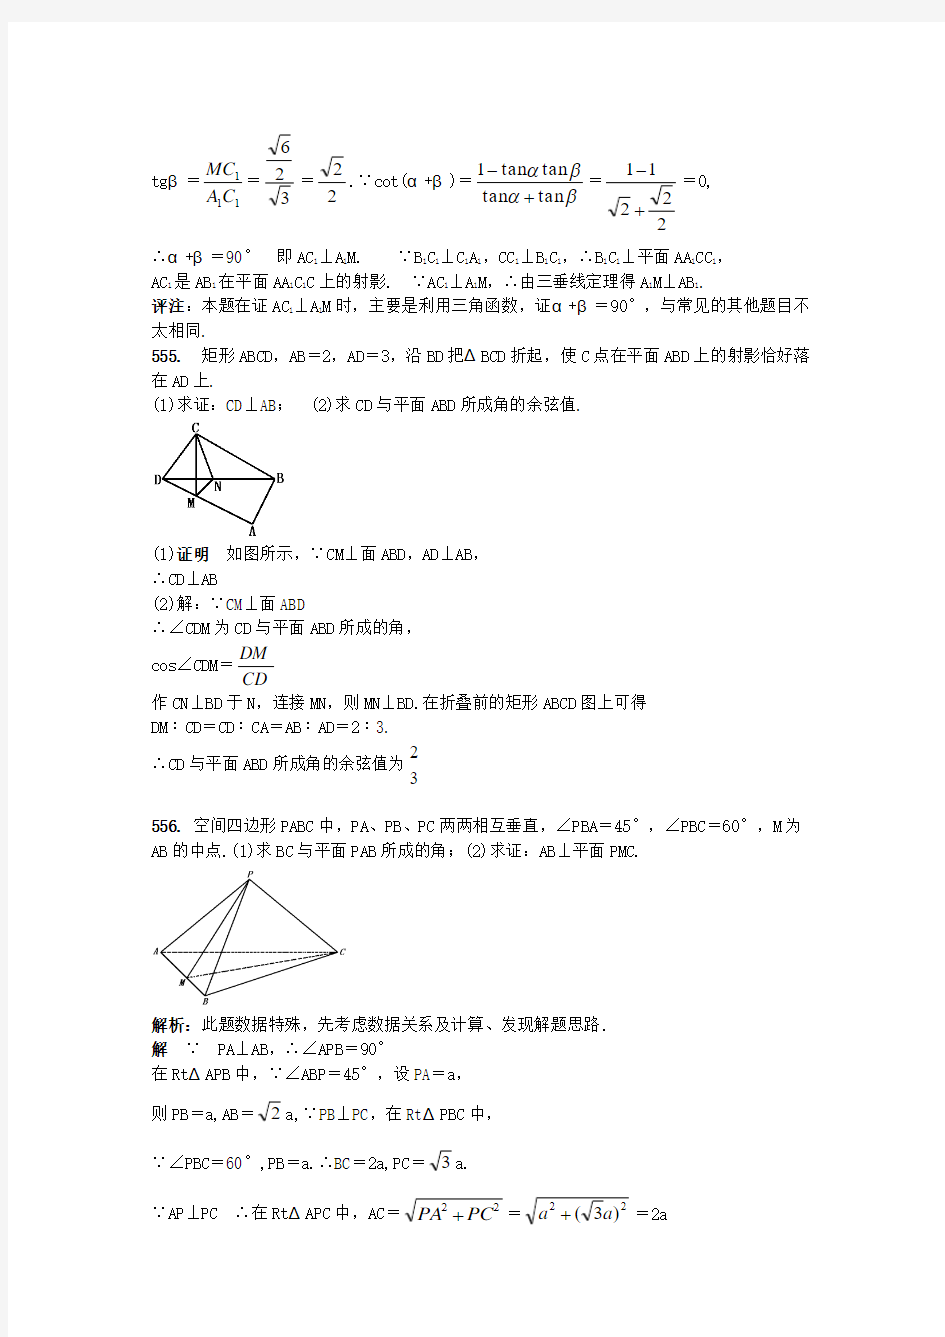 高中立体几何典型500题附加题题库及解析(十二)(551~600题)